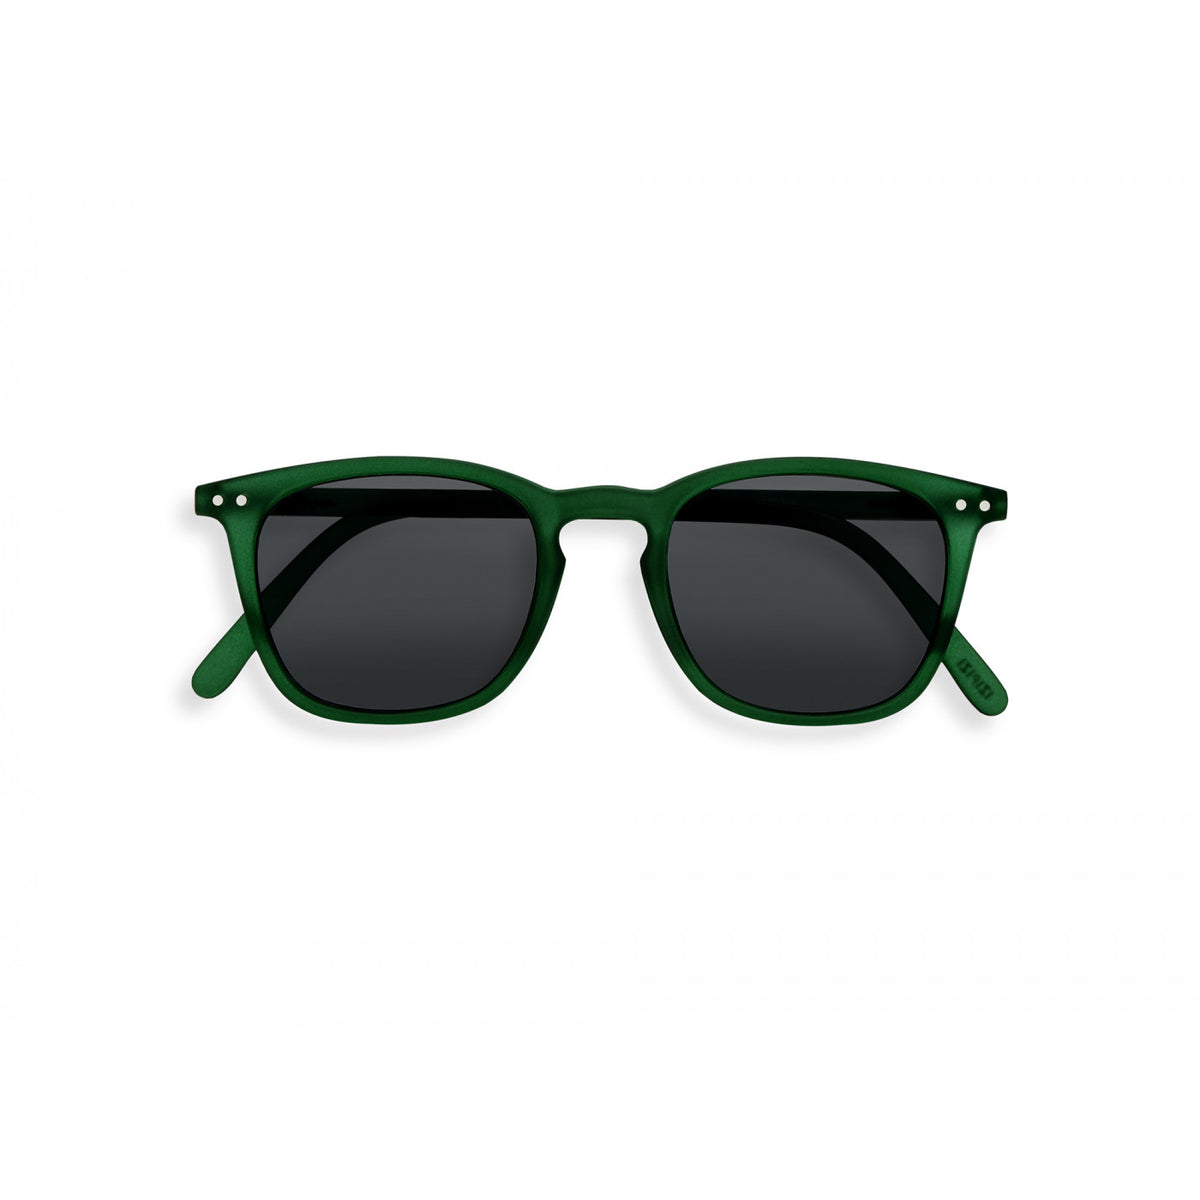 Sonnenbrille - #E SUN Black: optimaler Schutz dank unserer Gläser mit 100%igem UV-Filter der Kategorie 3. Mit ihrem originellen und topaktuellen Design, ihren Flex-Bügeln und ihrer gummiartigen Haptik bietet die Kollektion #SUN die perfekte Kombination aus Qualität, Stil, Komfort und Leichtigkeit.